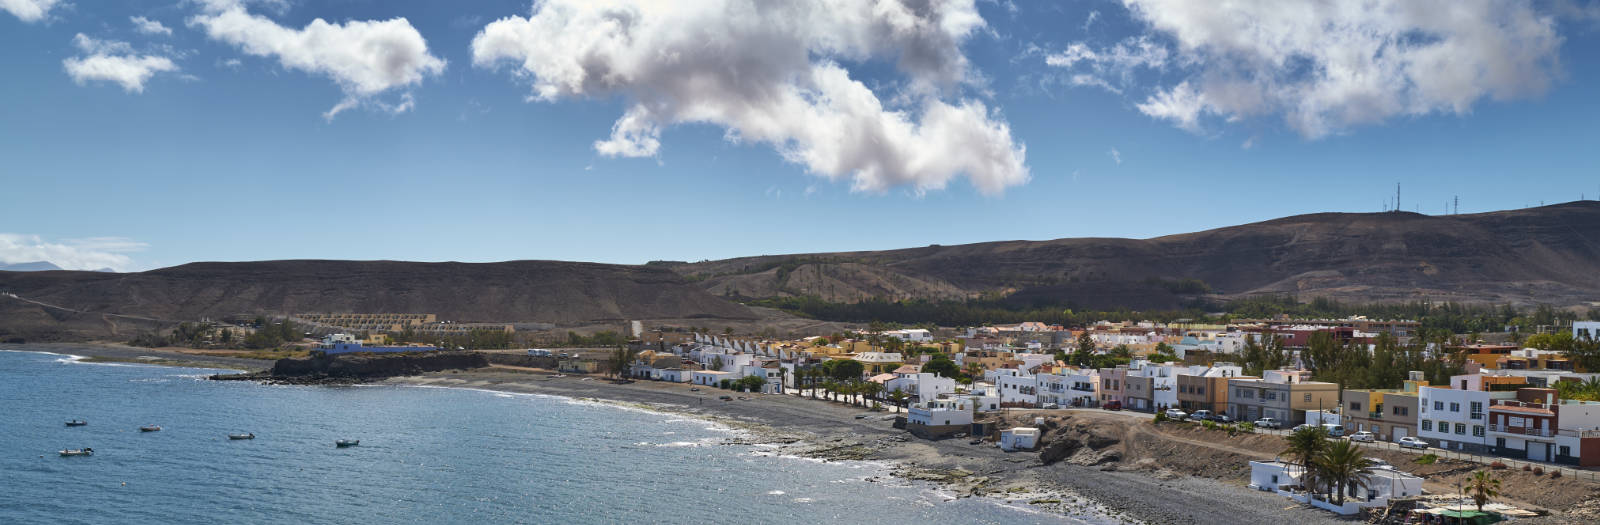 La Lajita Playa Fuerteventura.